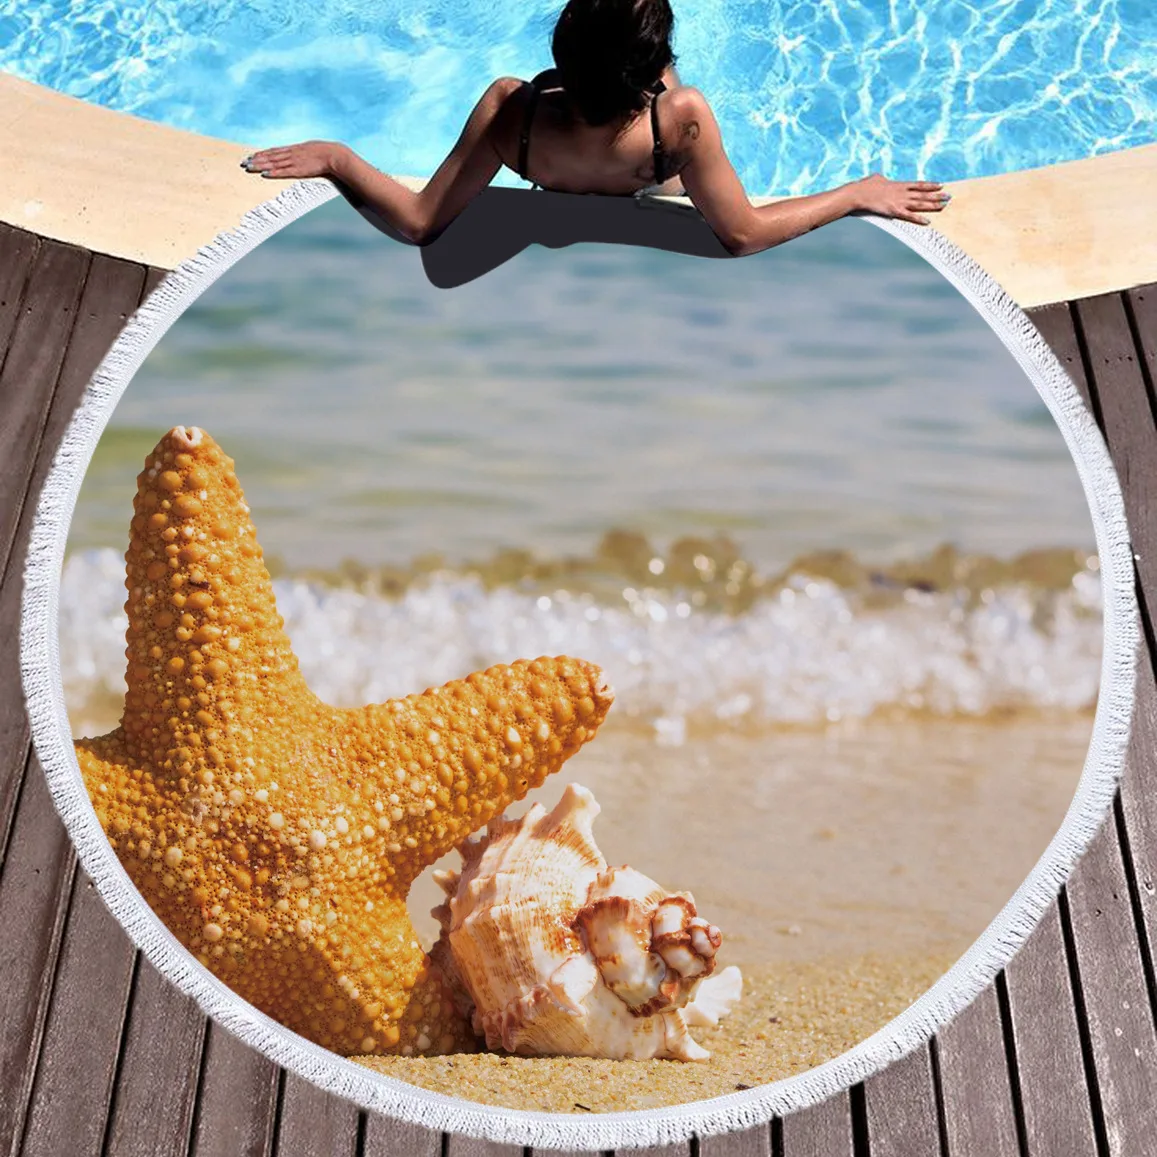 Дизайн морской пляж Полотенца микрофибры плюс с круглым может быть Ванна Полотенца коврик для пикника йога коврик ребенка ползать pad